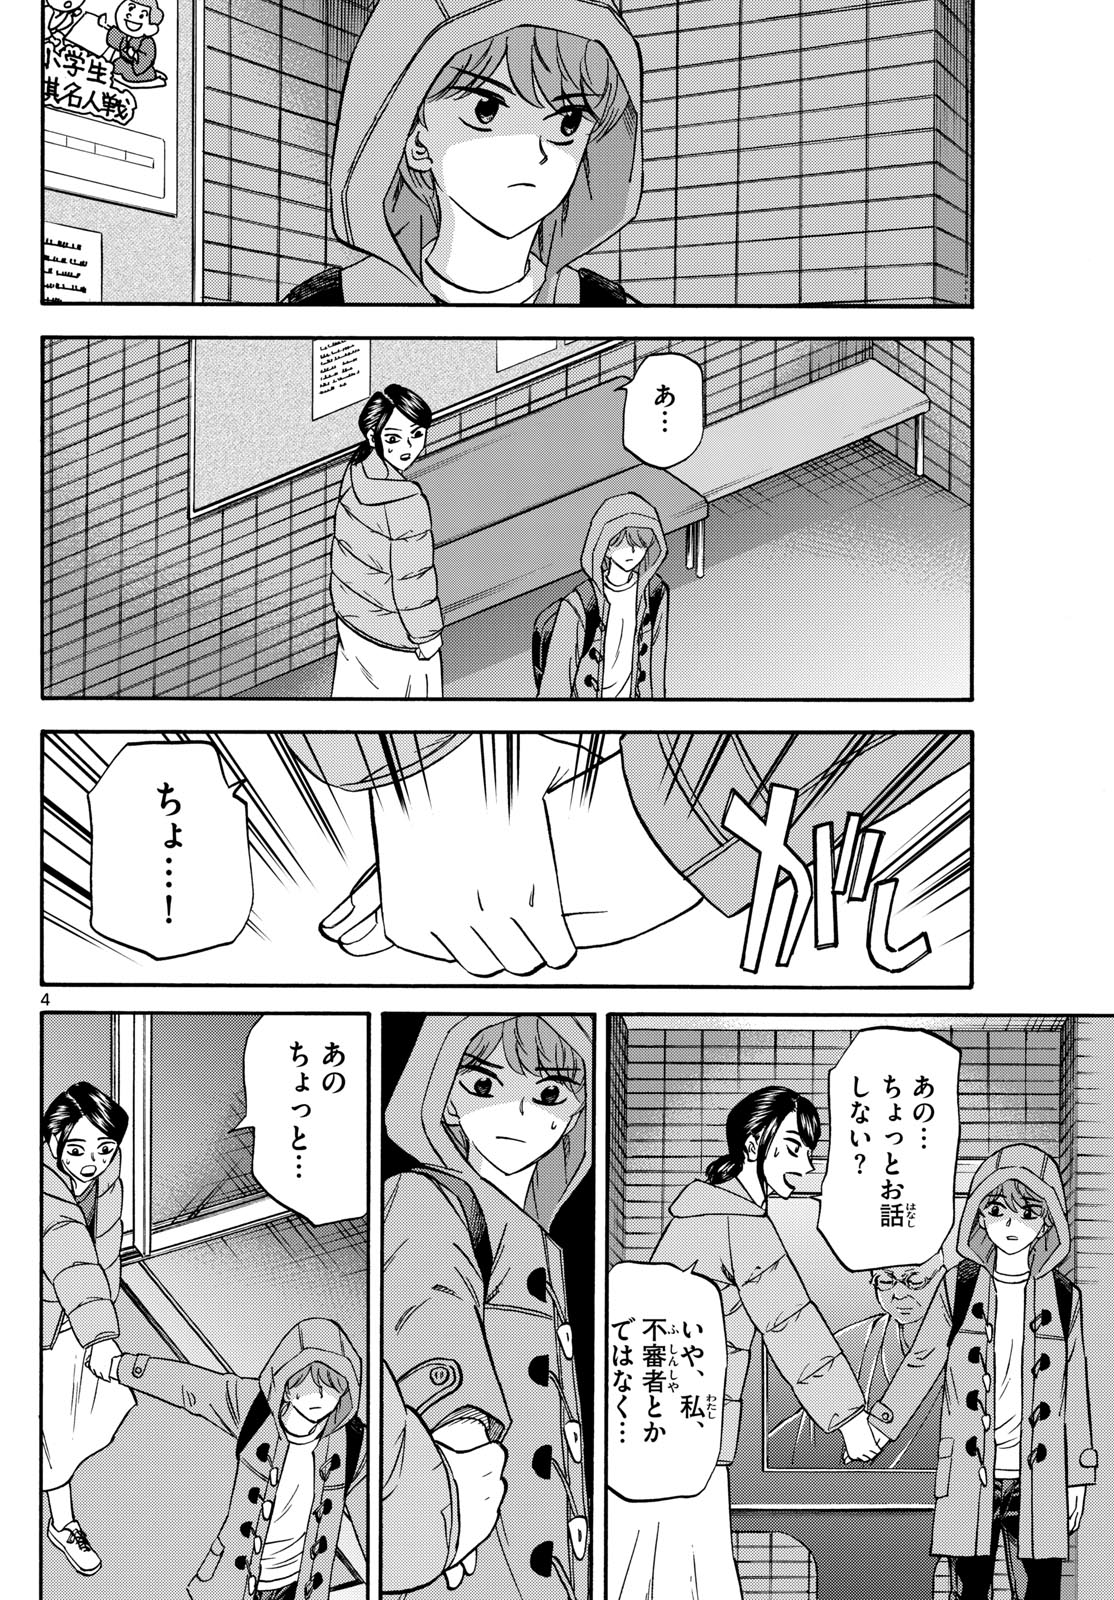 Tatsu to Ichigo - Chapter 173 - Page 4